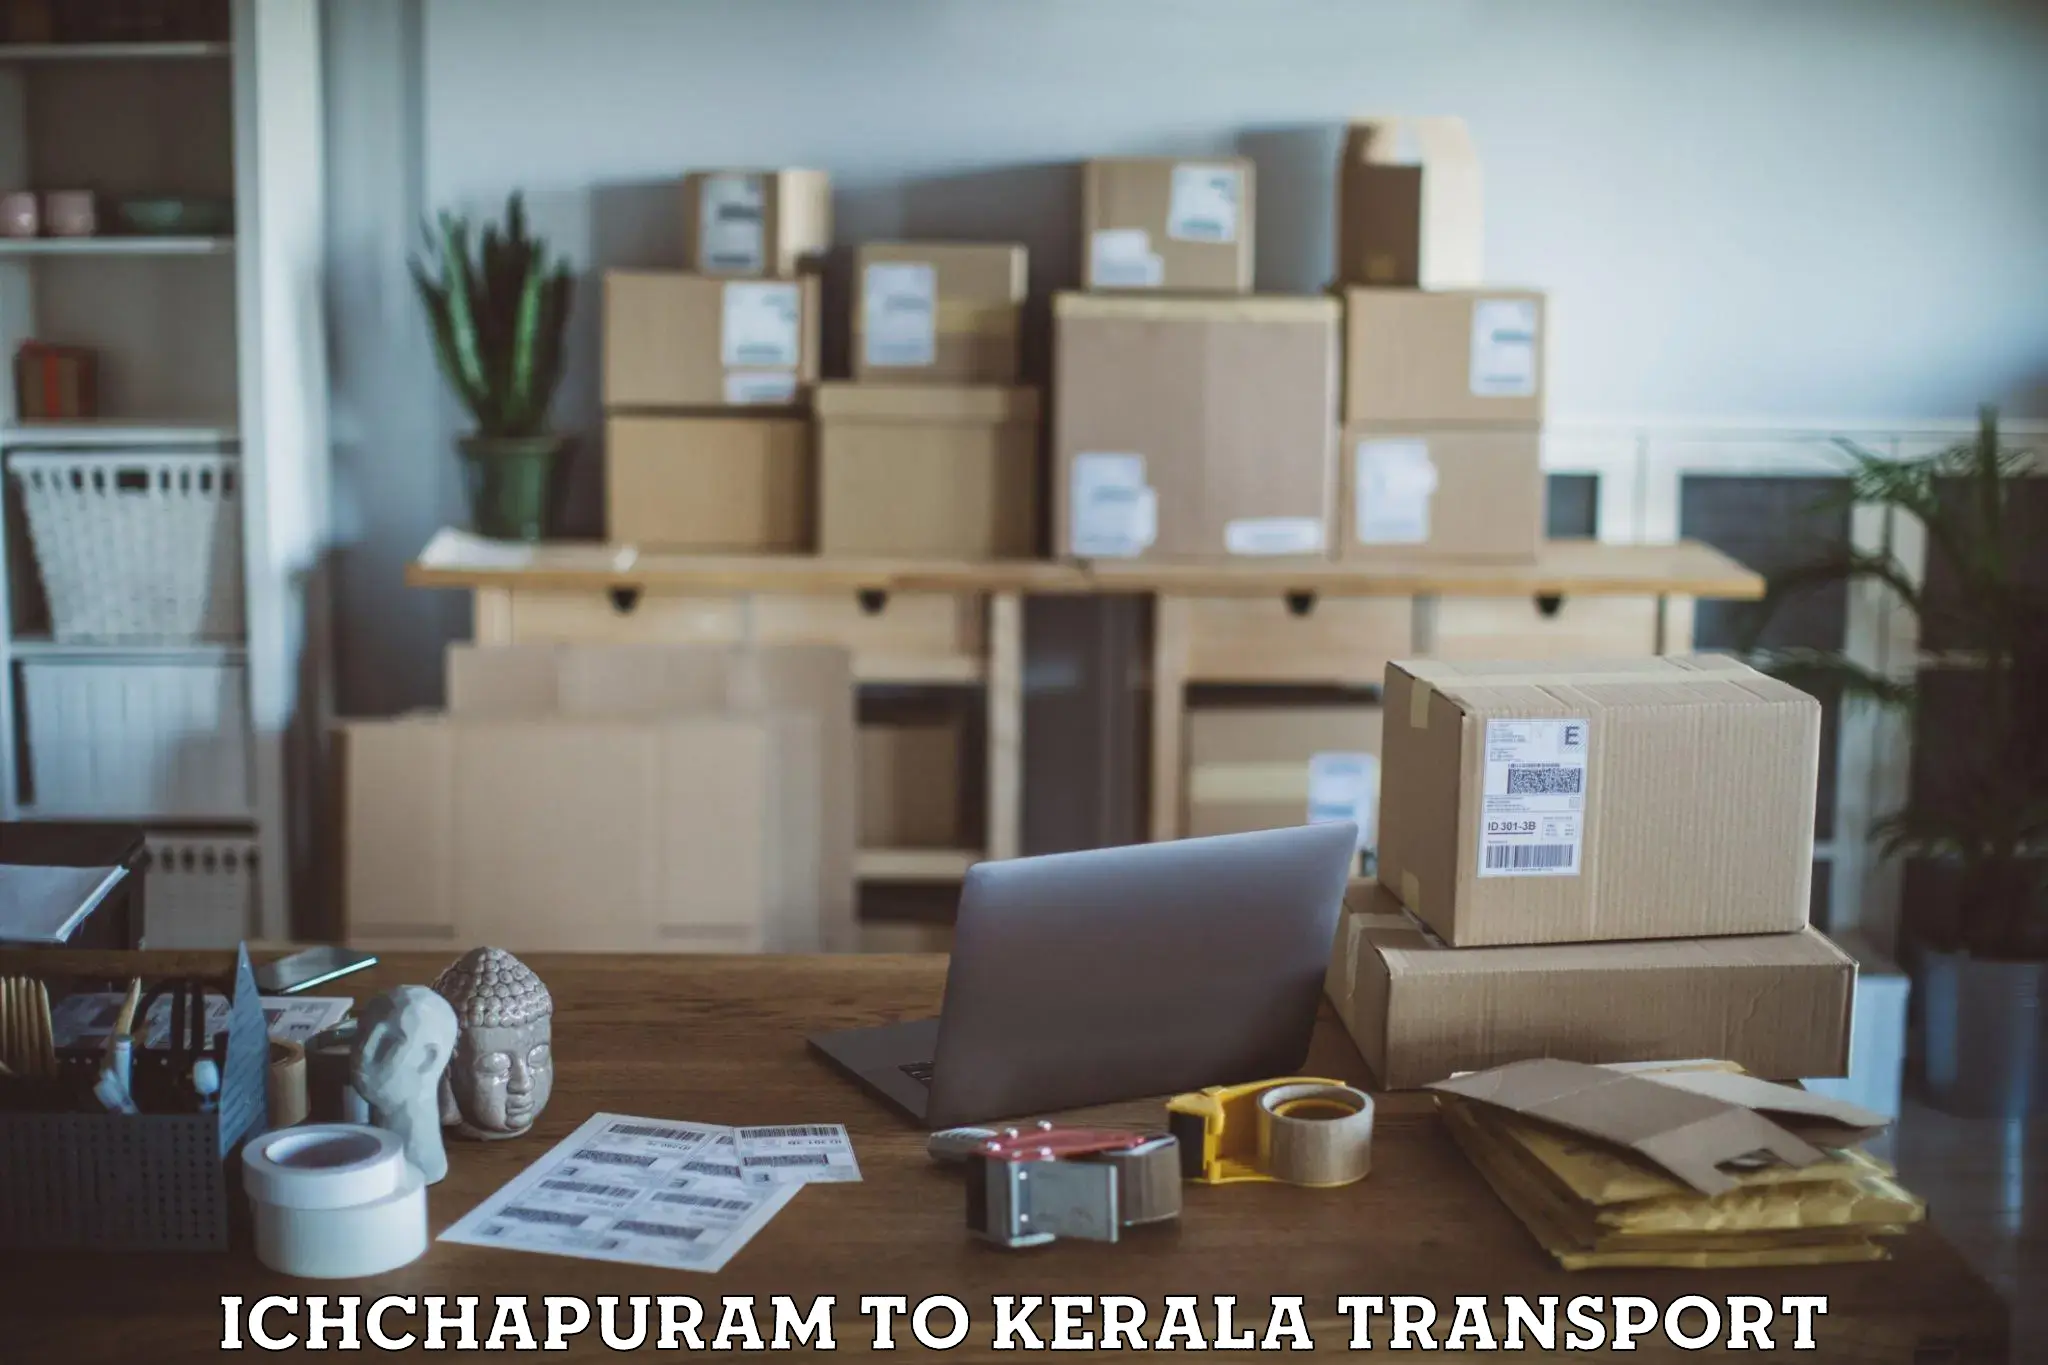 Container transport service Ichchapuram to Chervathur